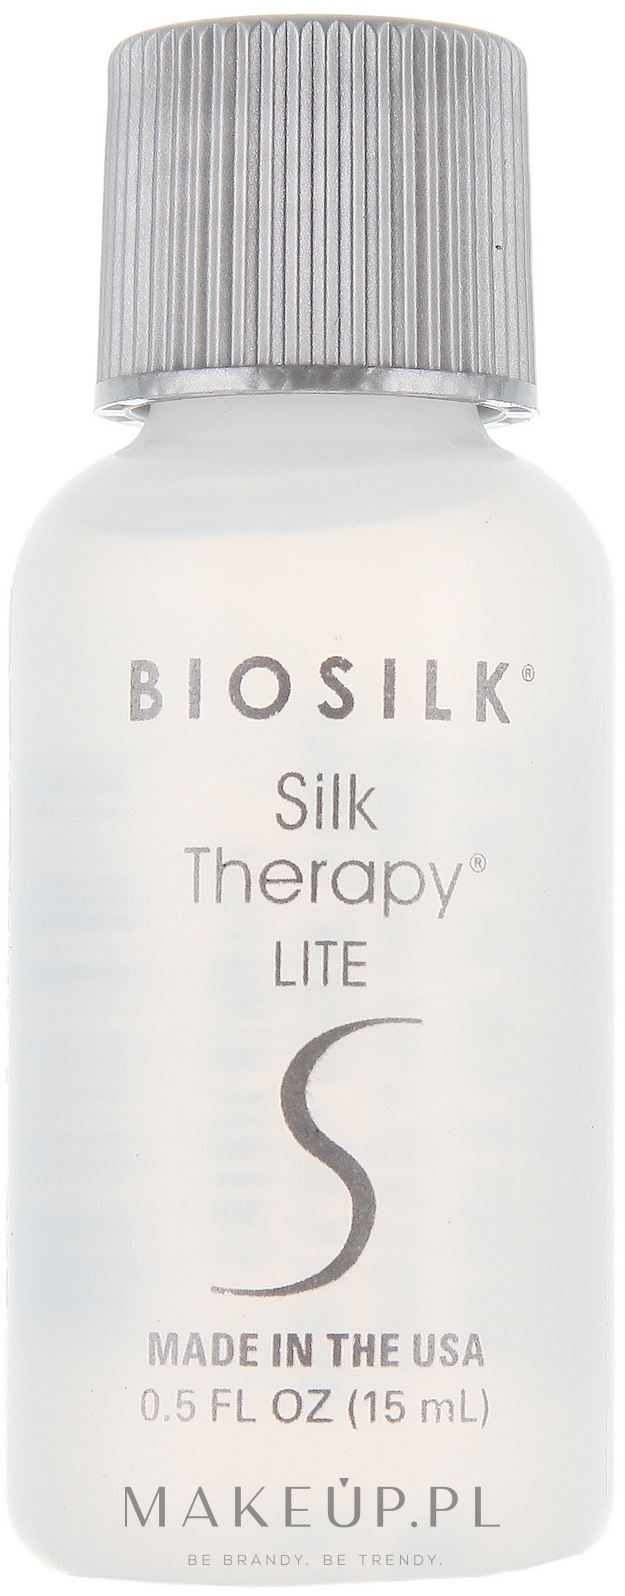 Płynny jedwab do włosów - BioSilk Silk Therapy Lite Silk Treatment — Zdjęcie 15 ml